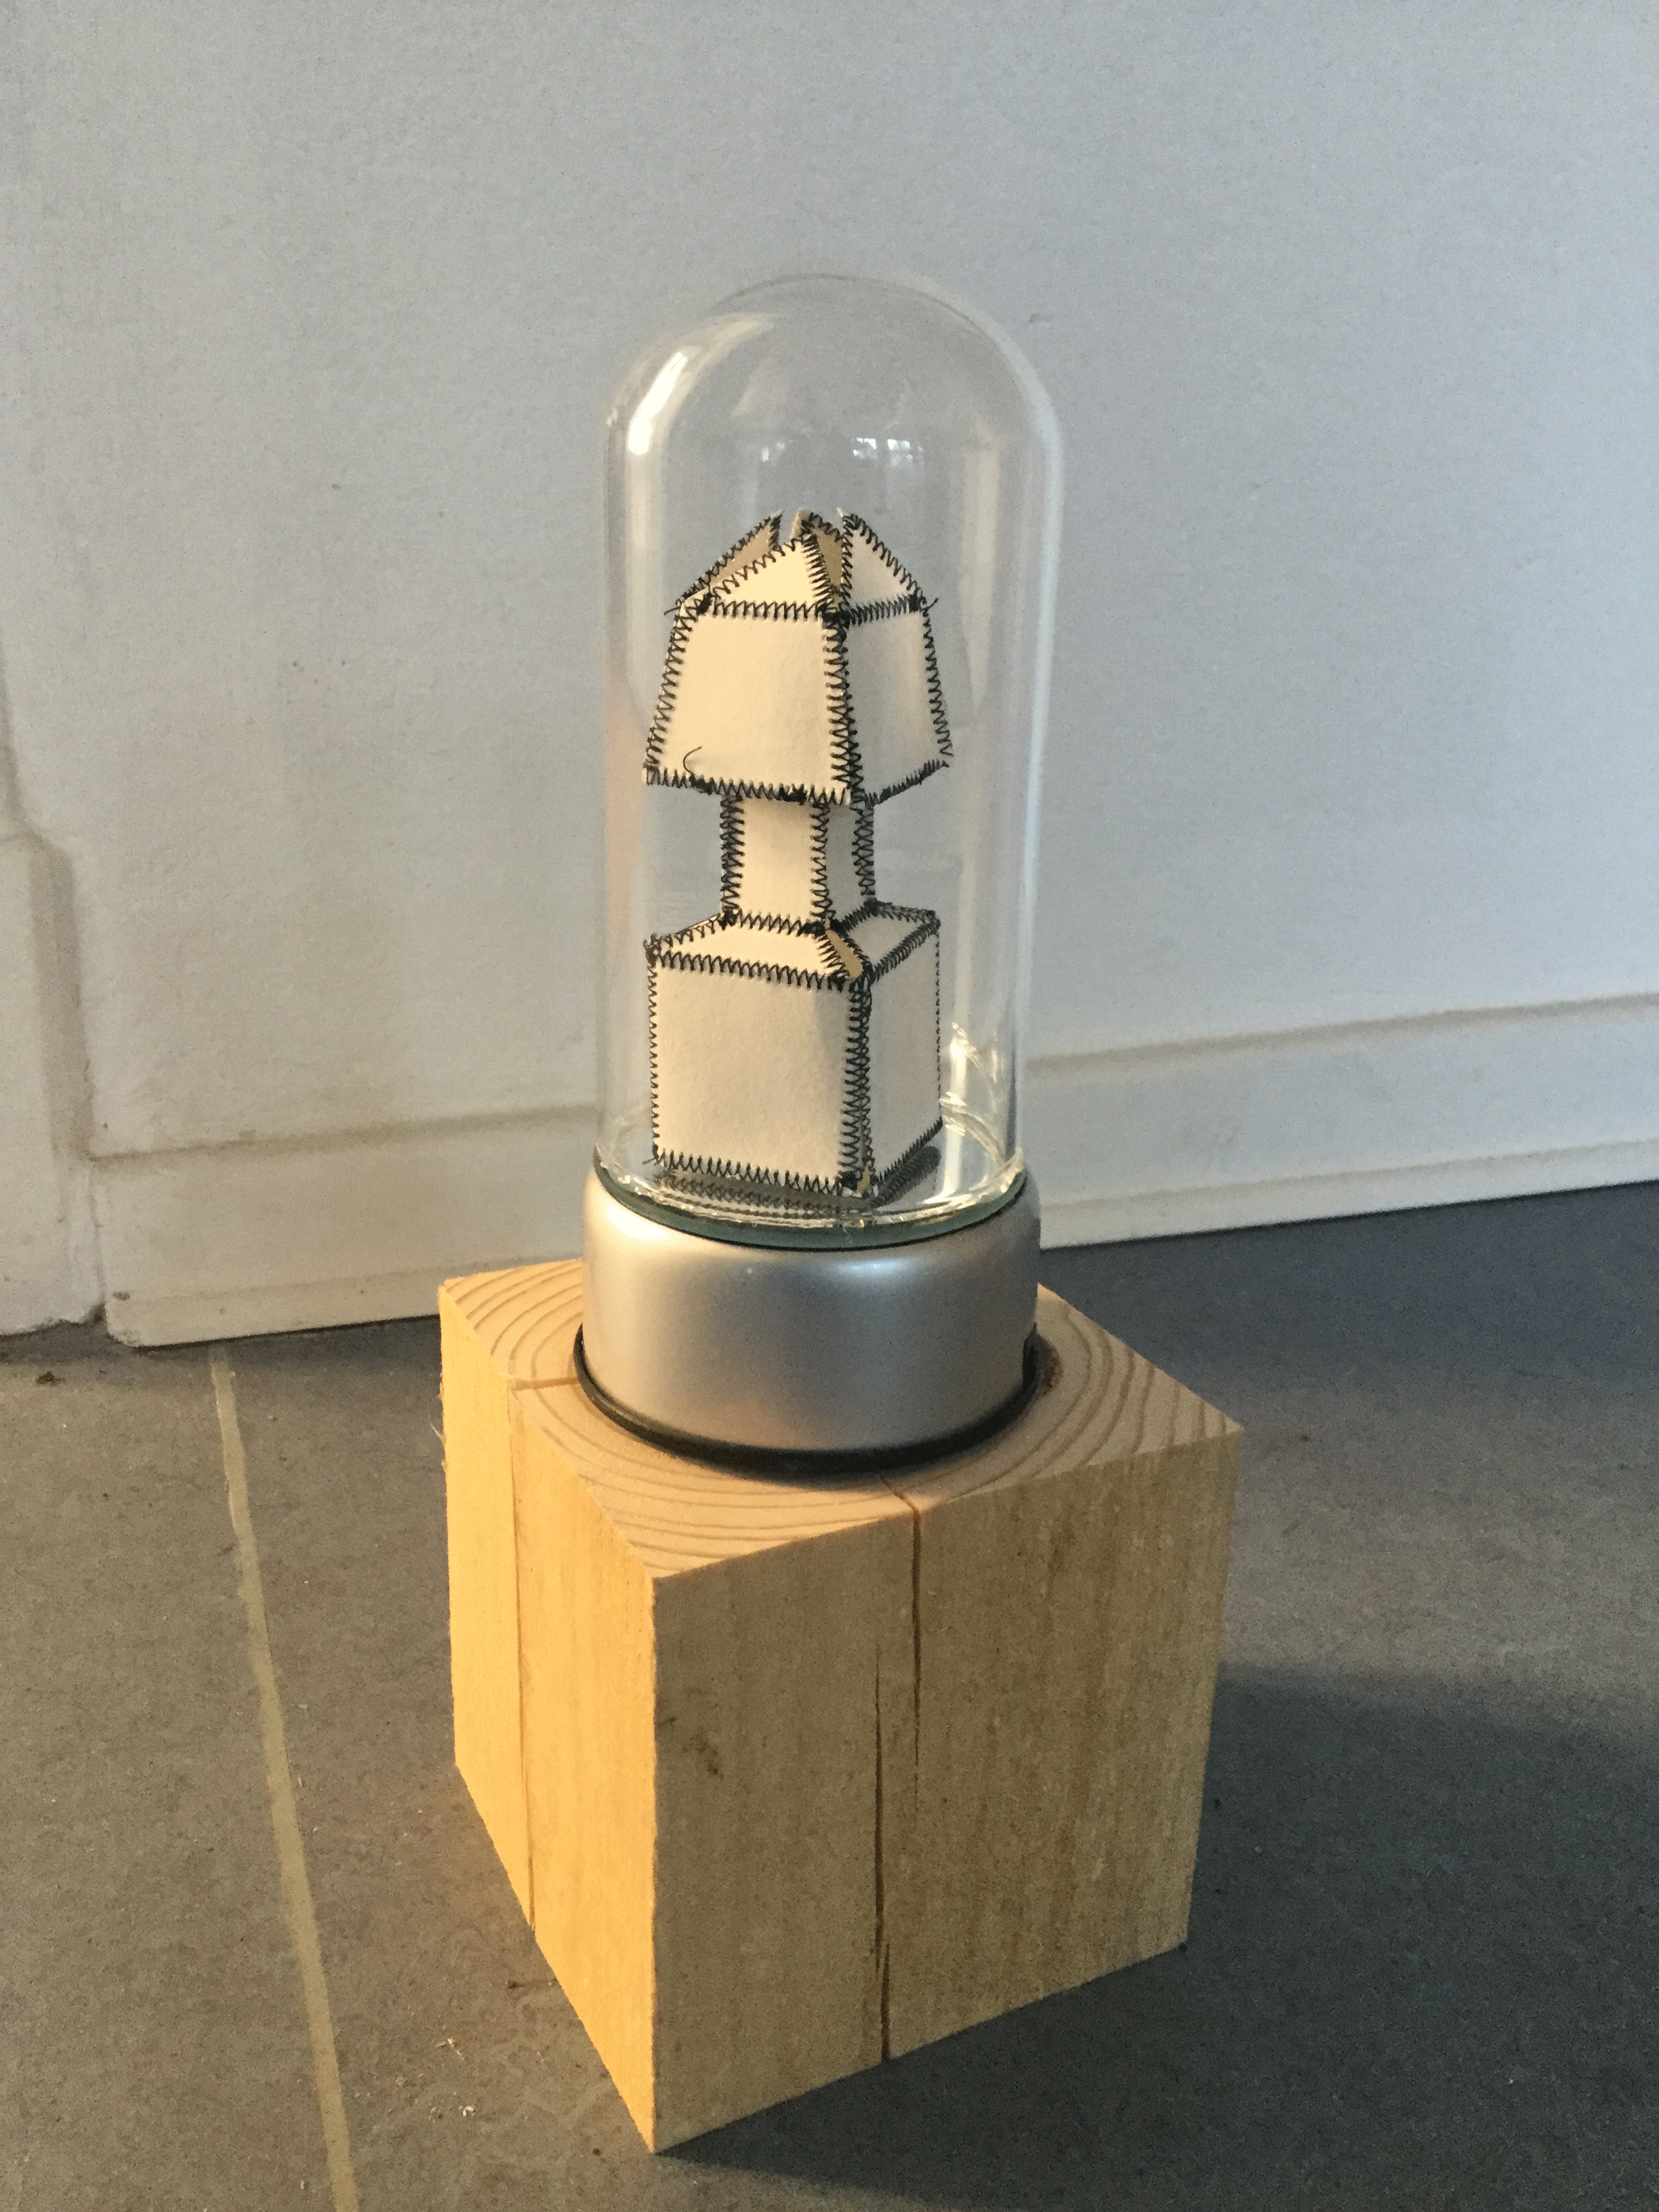 LAMPJE IN STOLP 2017

papier/glas en licht draaiplateau